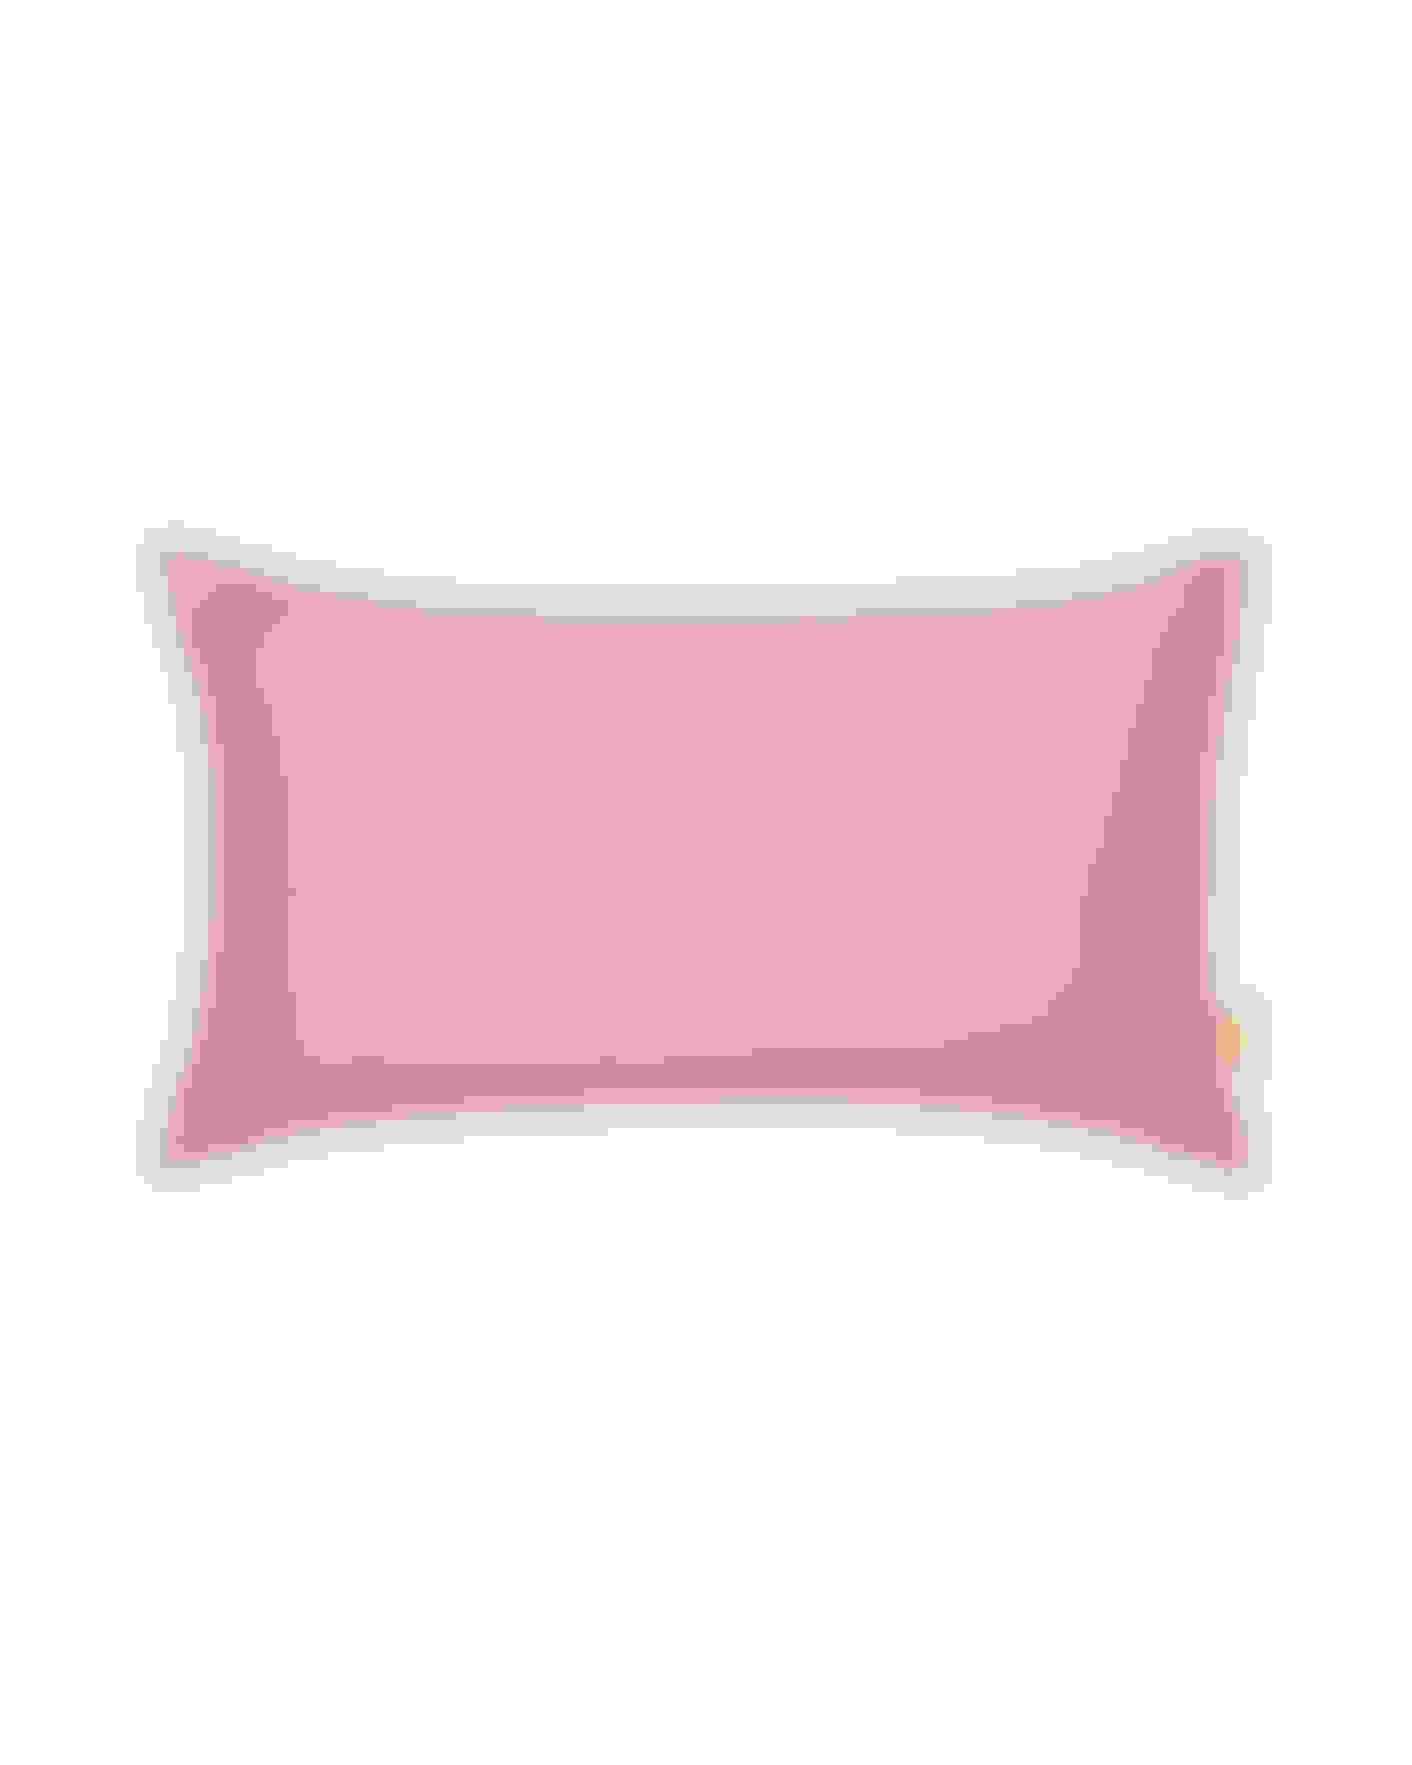 Pink Beauty Sleep Pillow Ted Baker